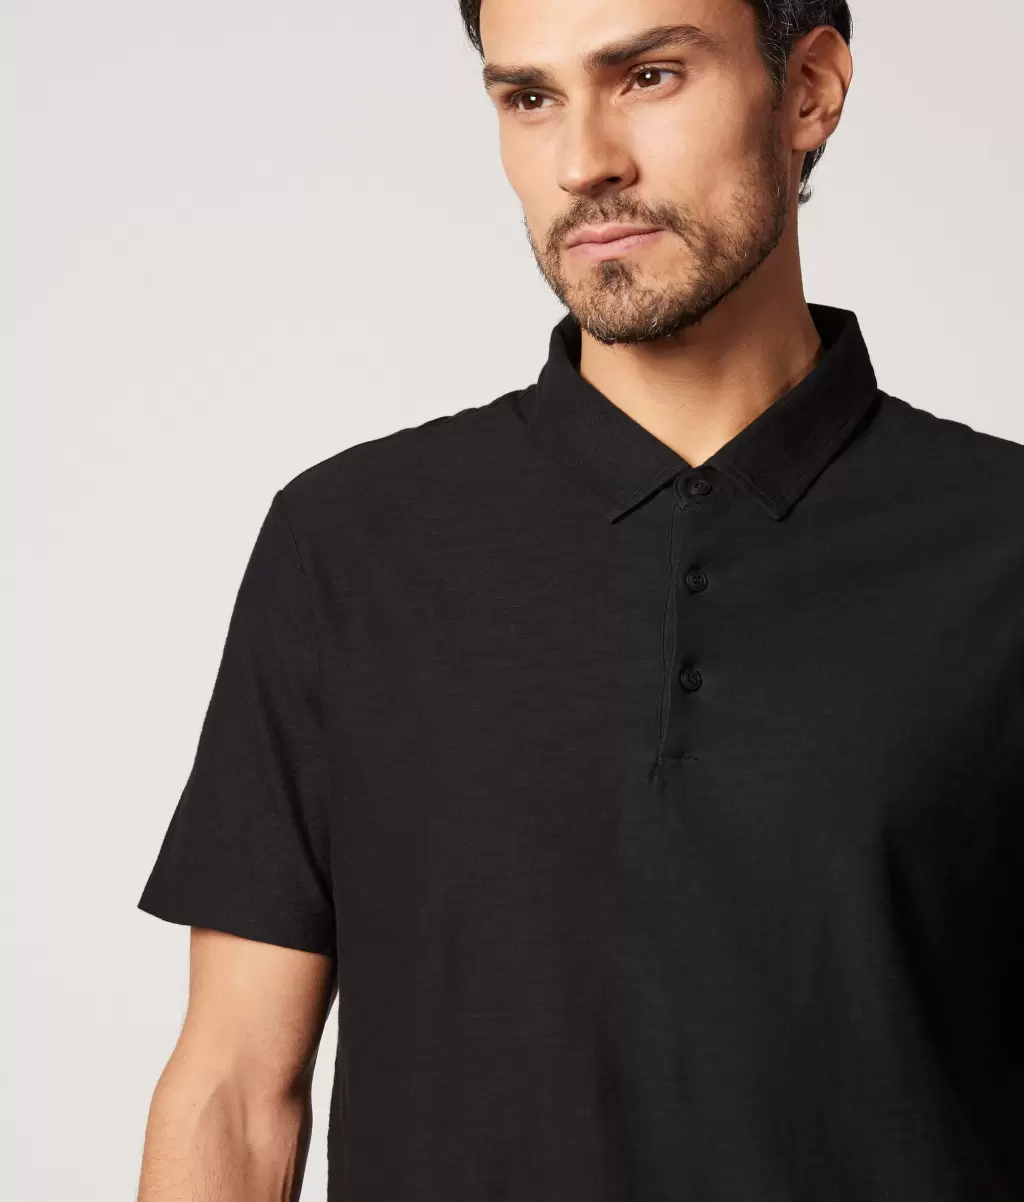 Falconeri Mężczyzna T-Shirty I Koszulki Polo Black Koszulka Polo Z Bawełny Twist - 3